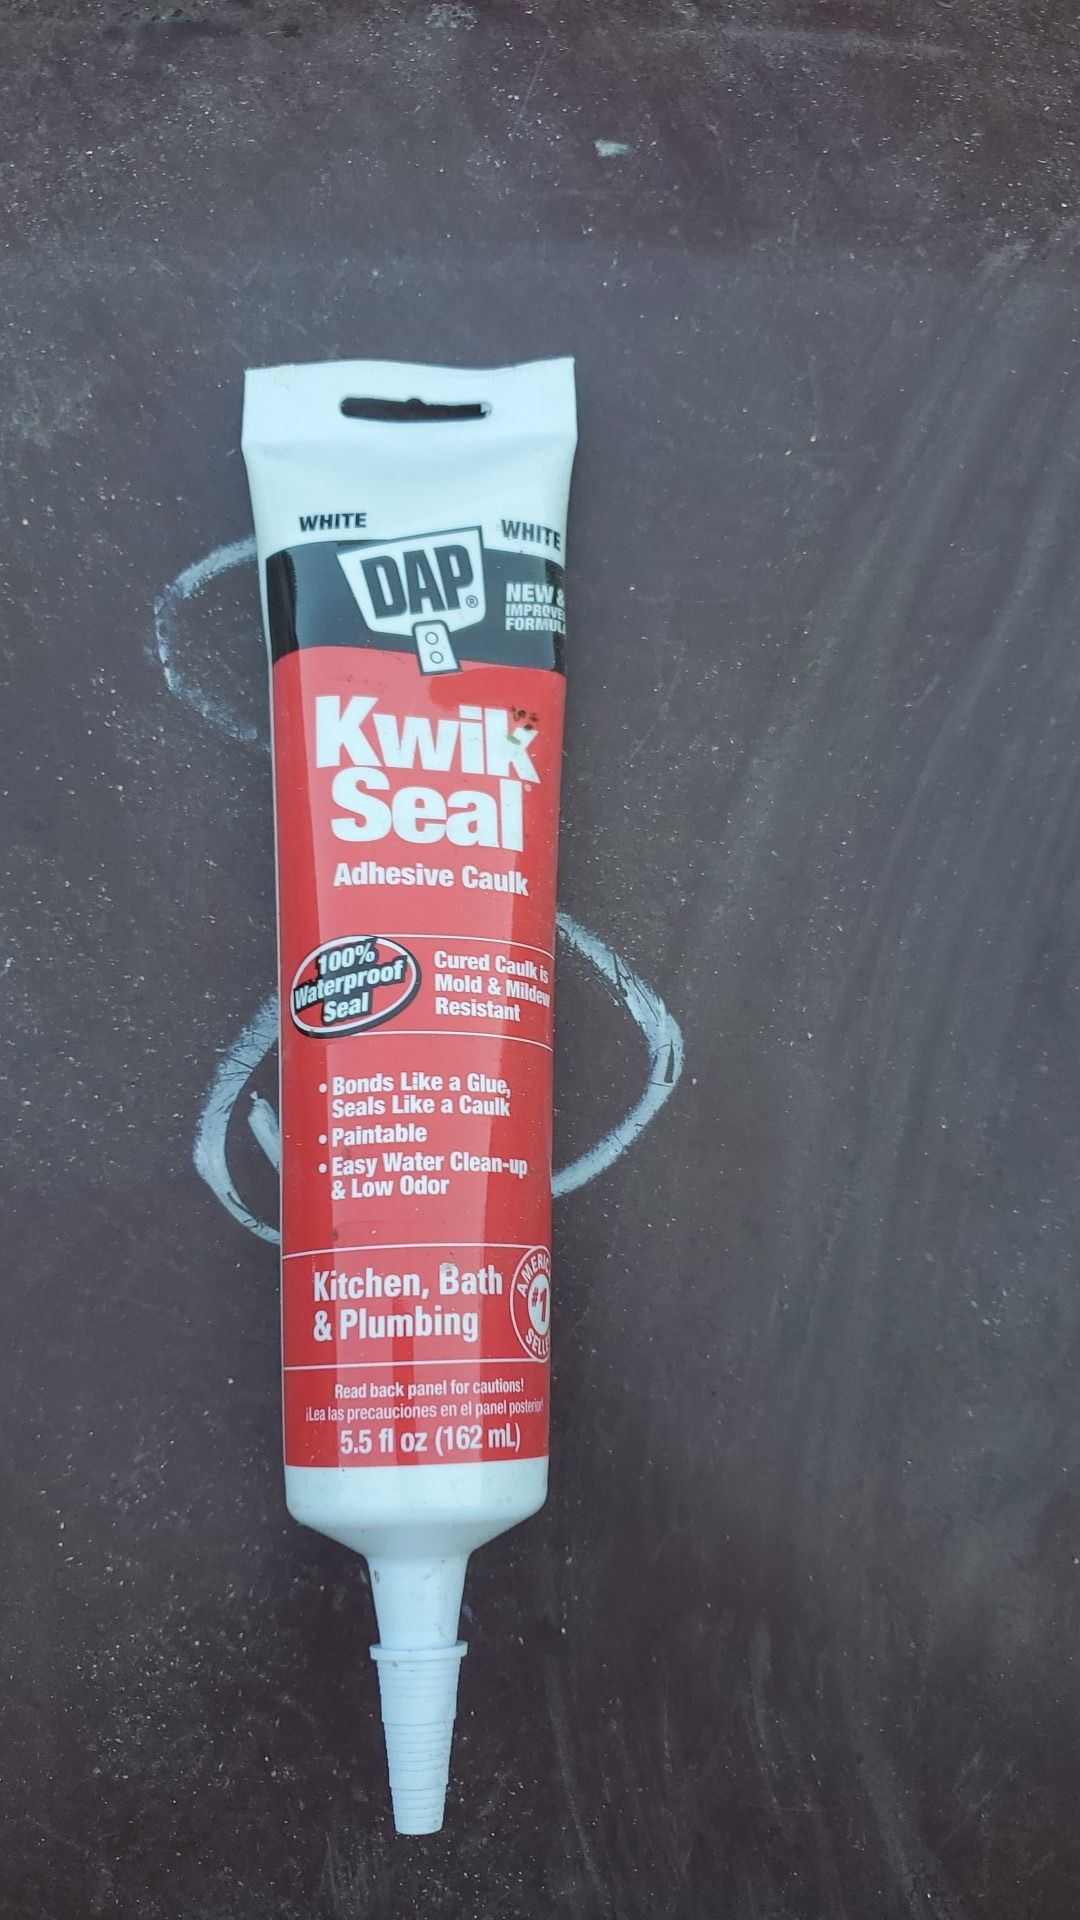 Kwik seal 100%waterproof